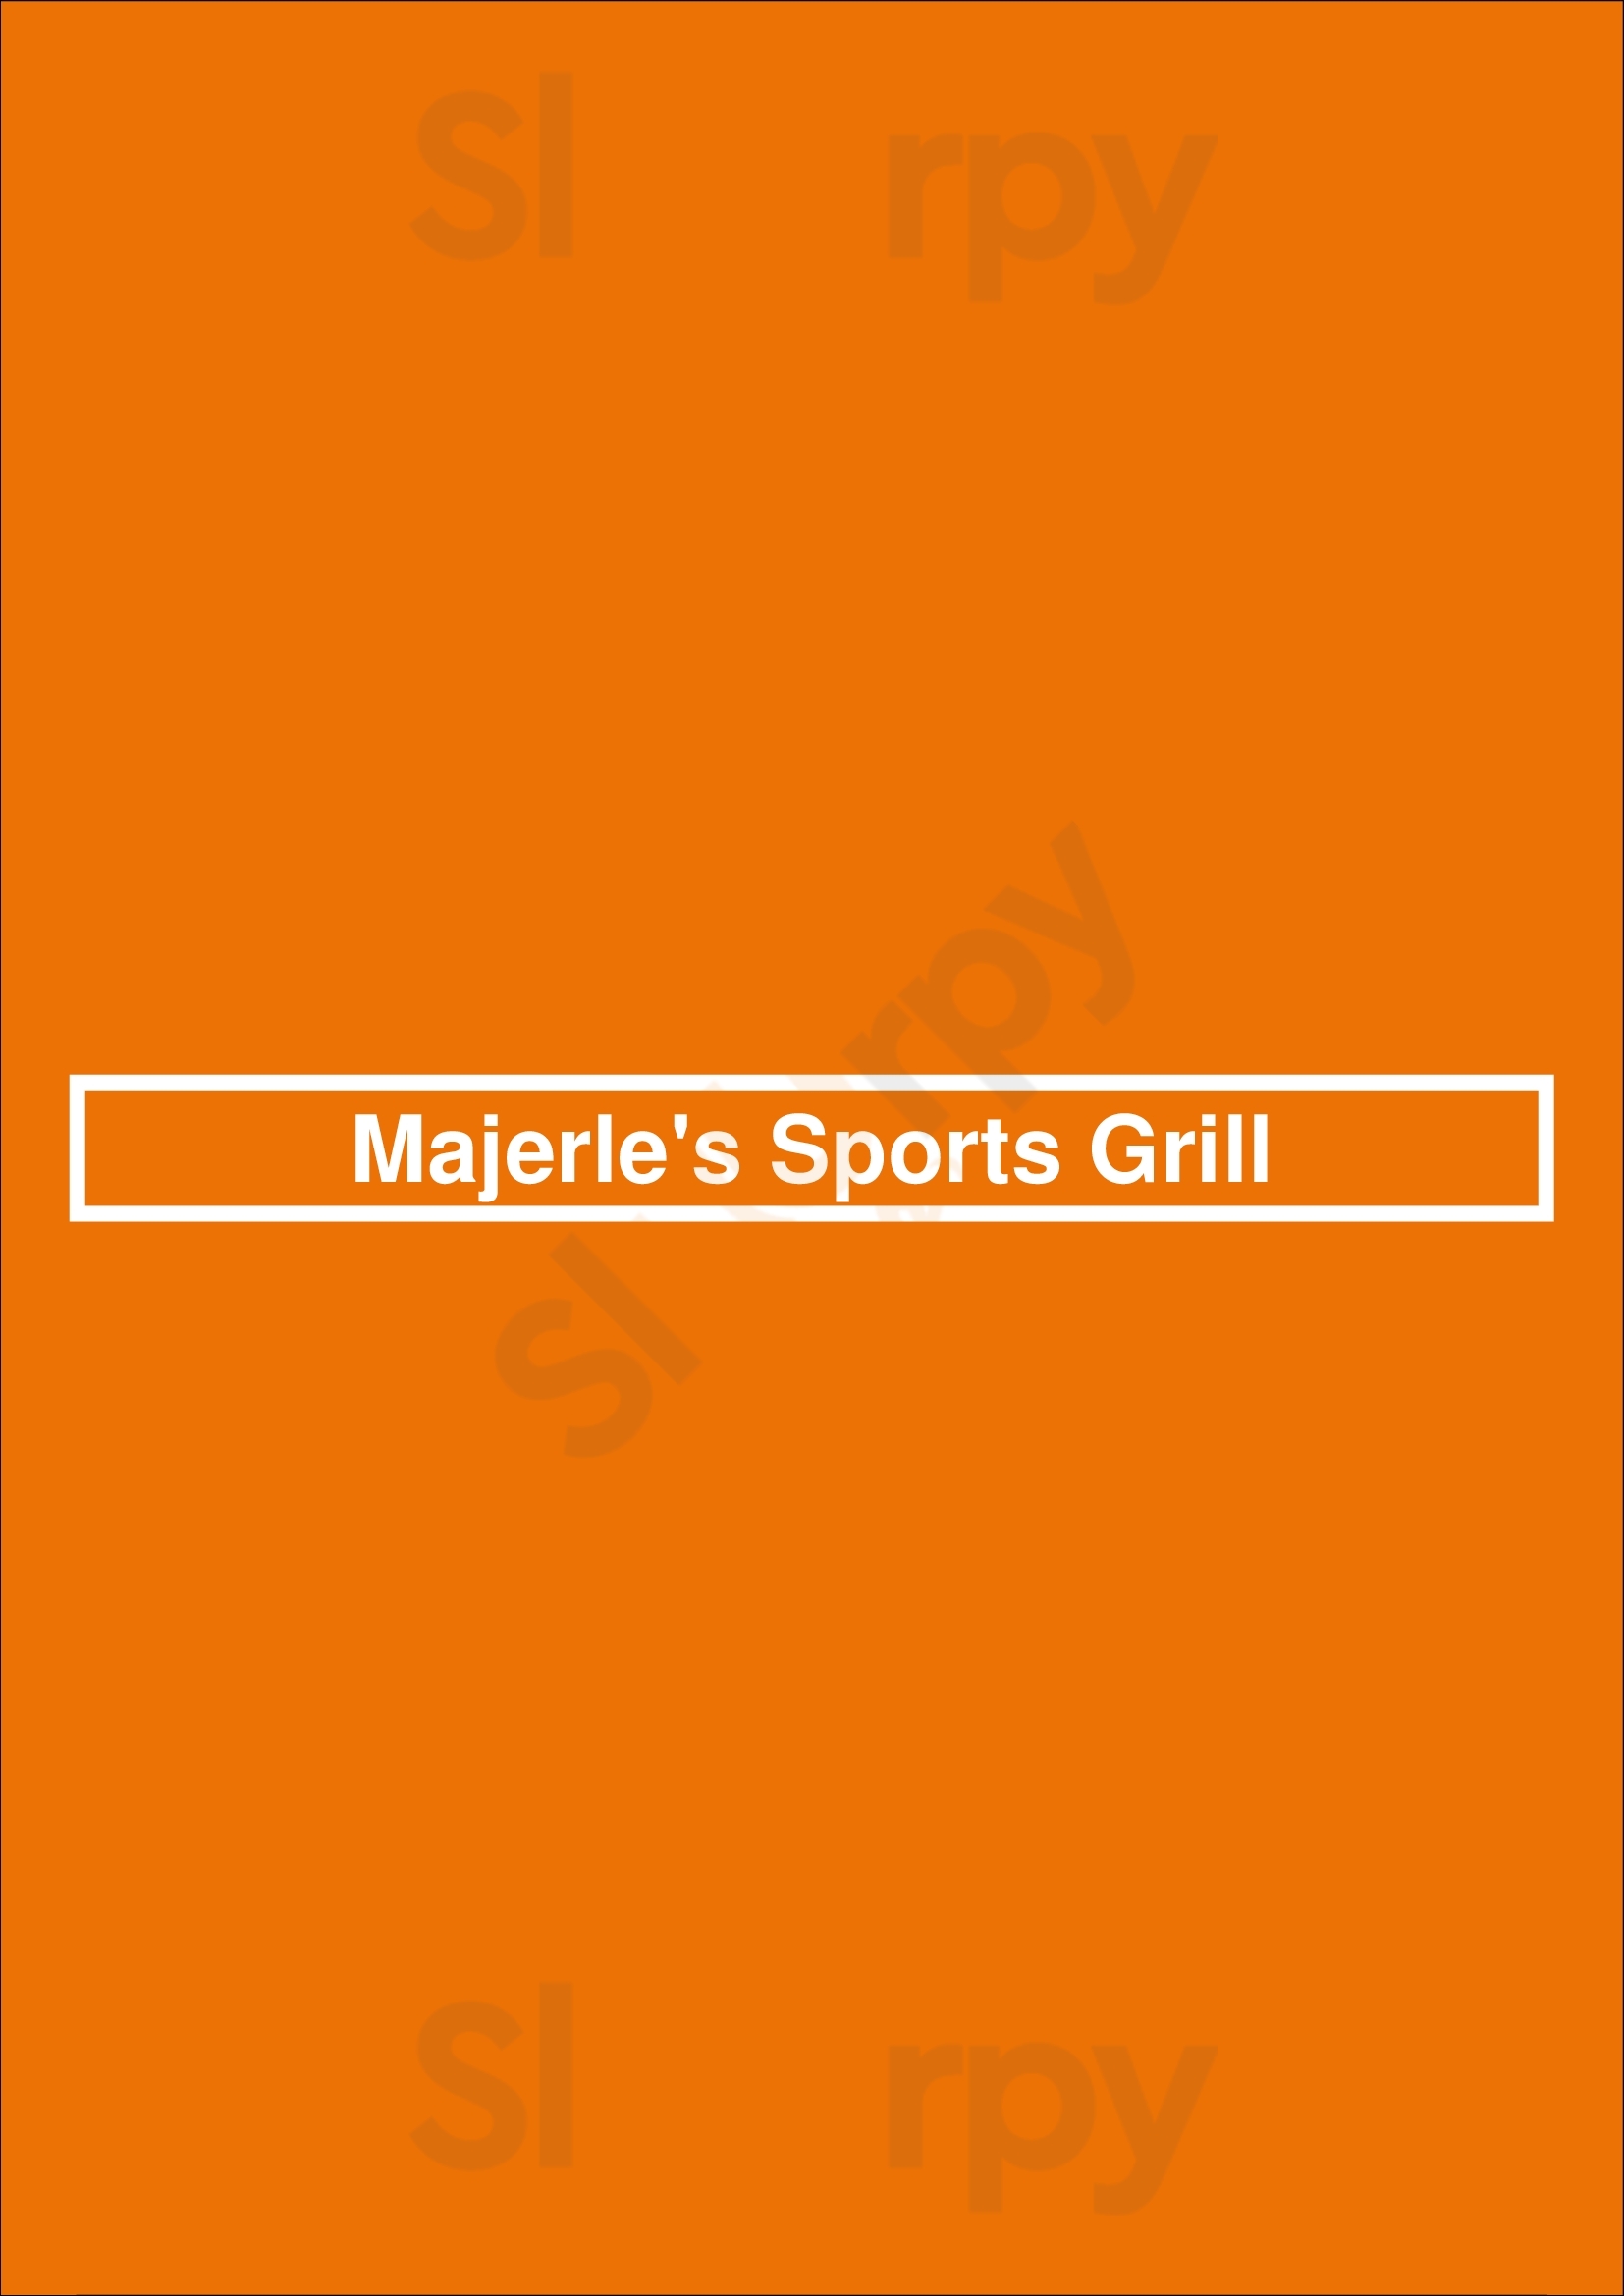 Majerle's Sports Grill Phoenix Menu - 1